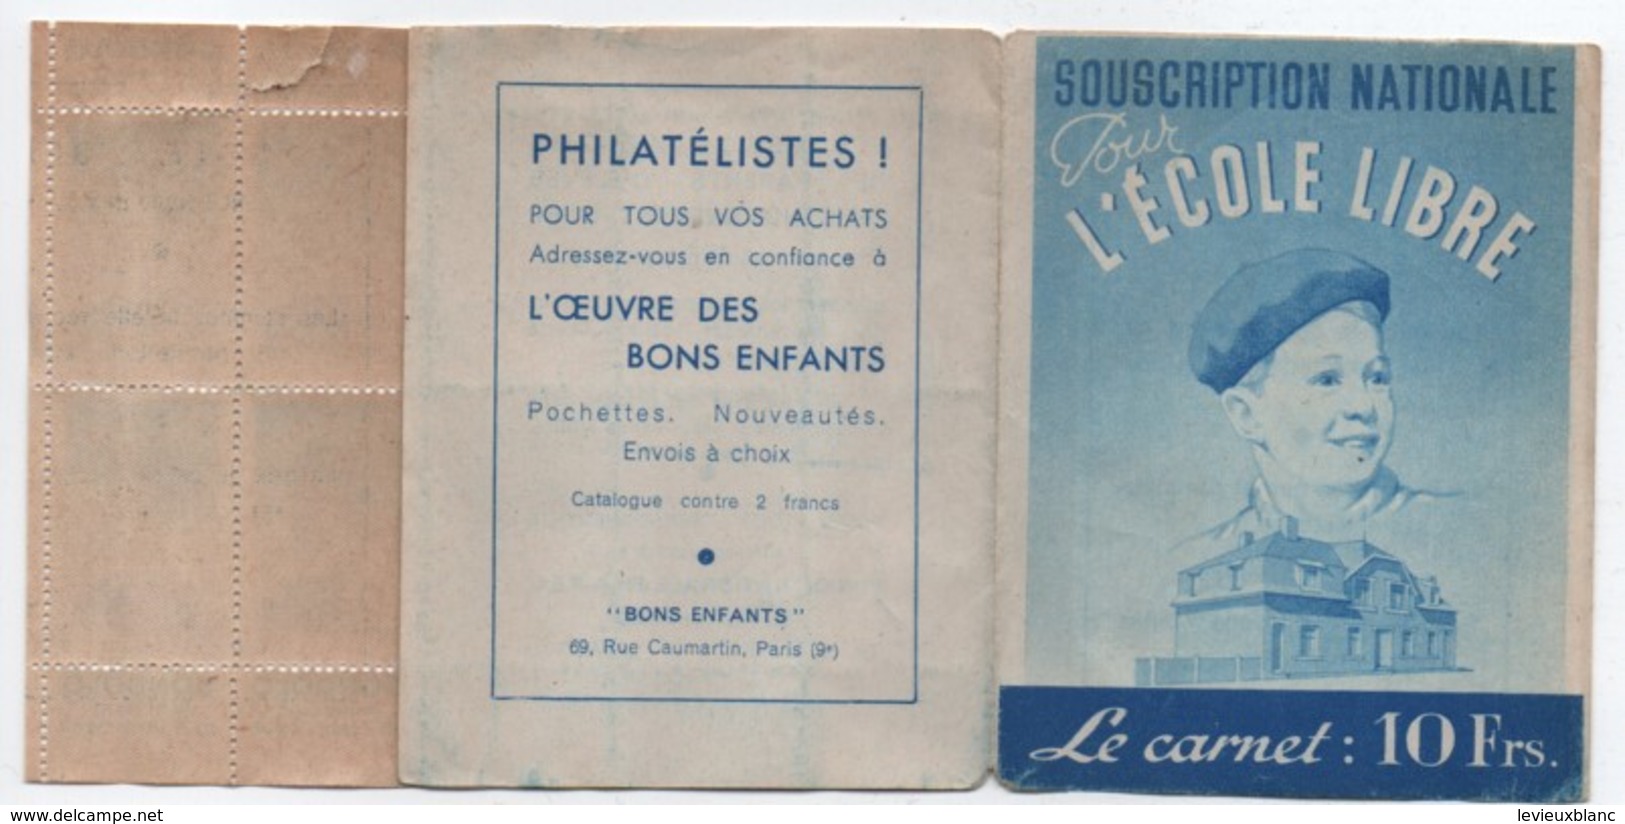 Ecole/Souscription Nationale Pour L'Ecole Libre/Le Carnet De Timbres 10 Frs/APEL/ Vers 1940 - 1950    CAH185 - Diploma's En Schoolrapporten